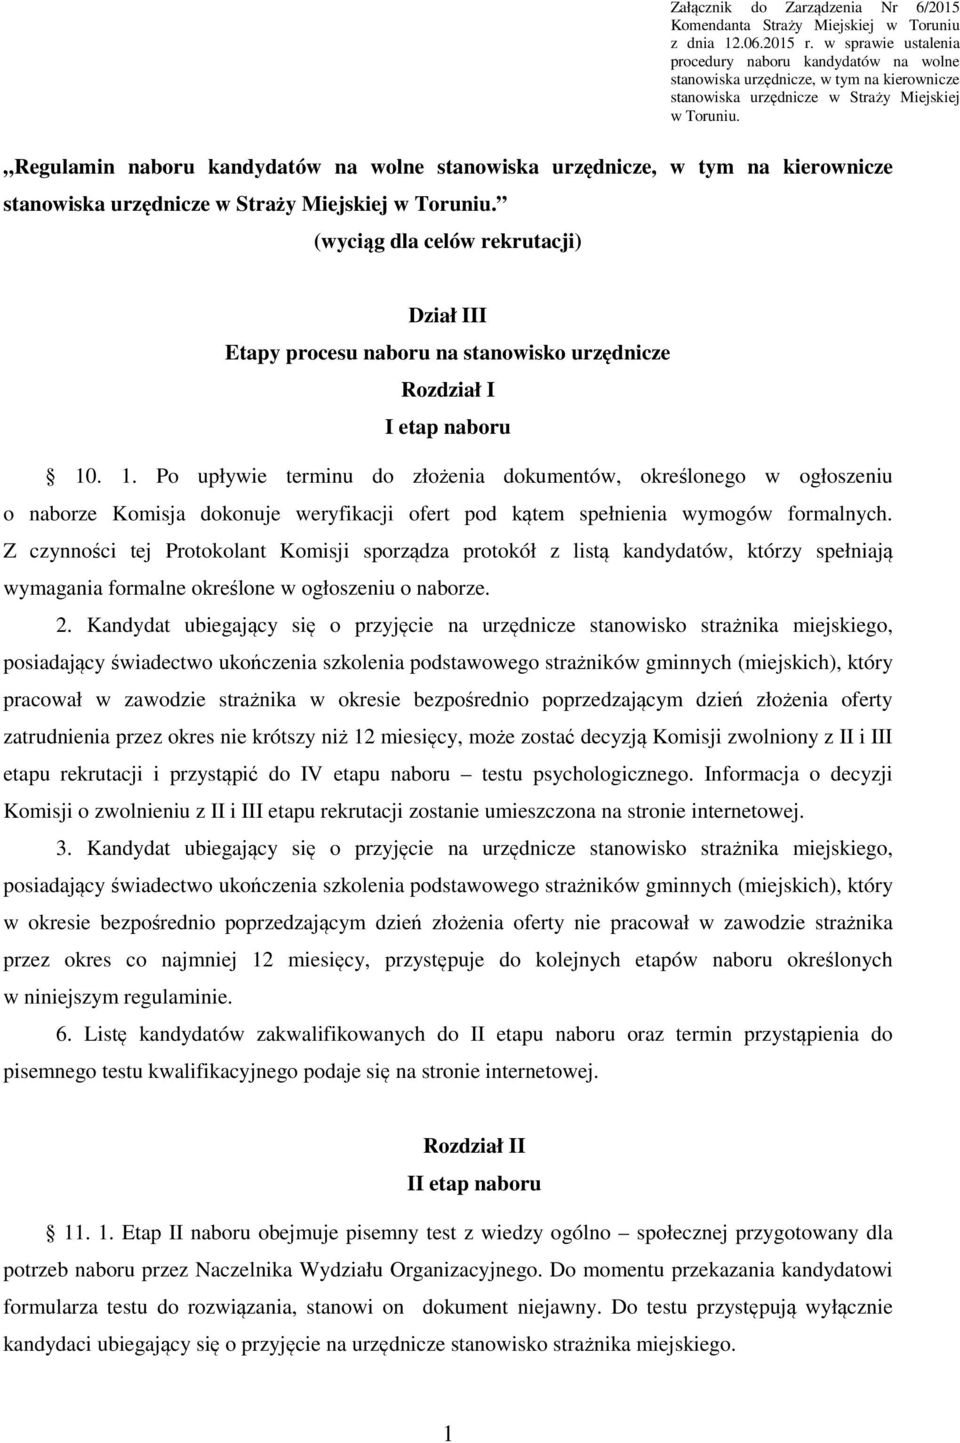 Regulamin naboru kandydatów na wolne stanowiska urzędnicze, w tym na kierownicze stanowiska urzędnicze w Straży Miejskiej w Toruniu.